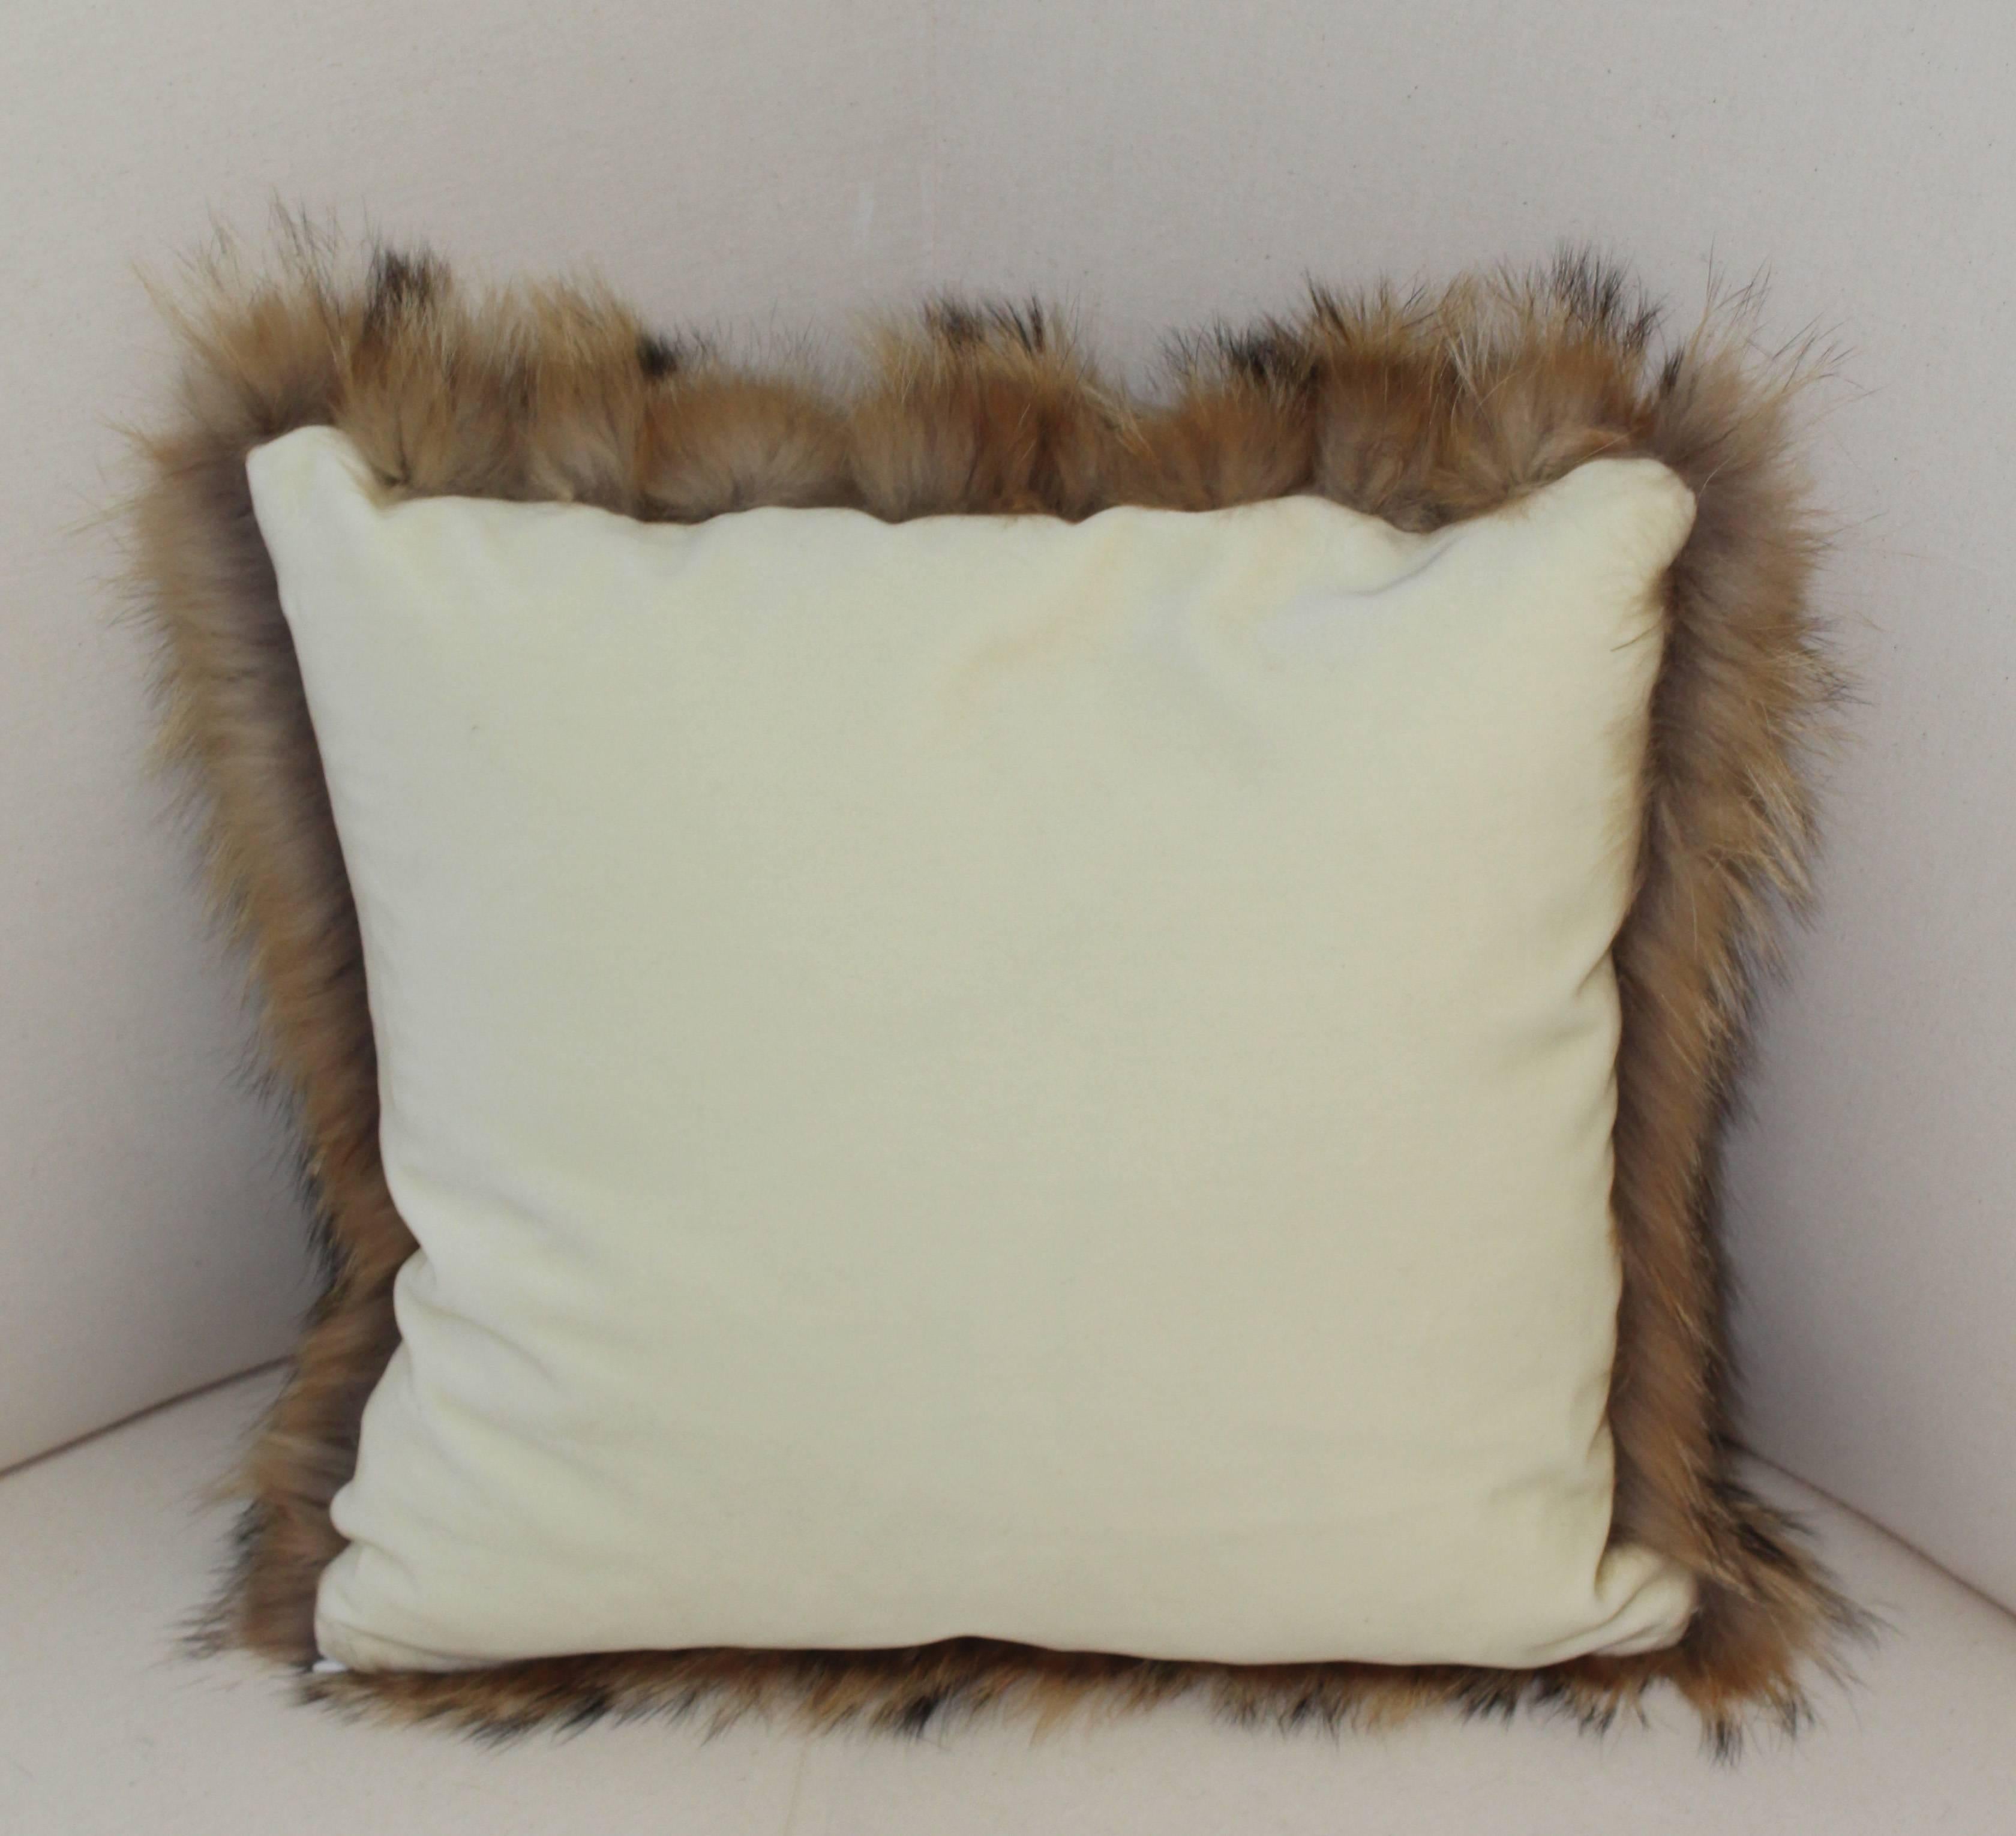 Genuine elegant Tanuki fur throw pillows. These come in both 14